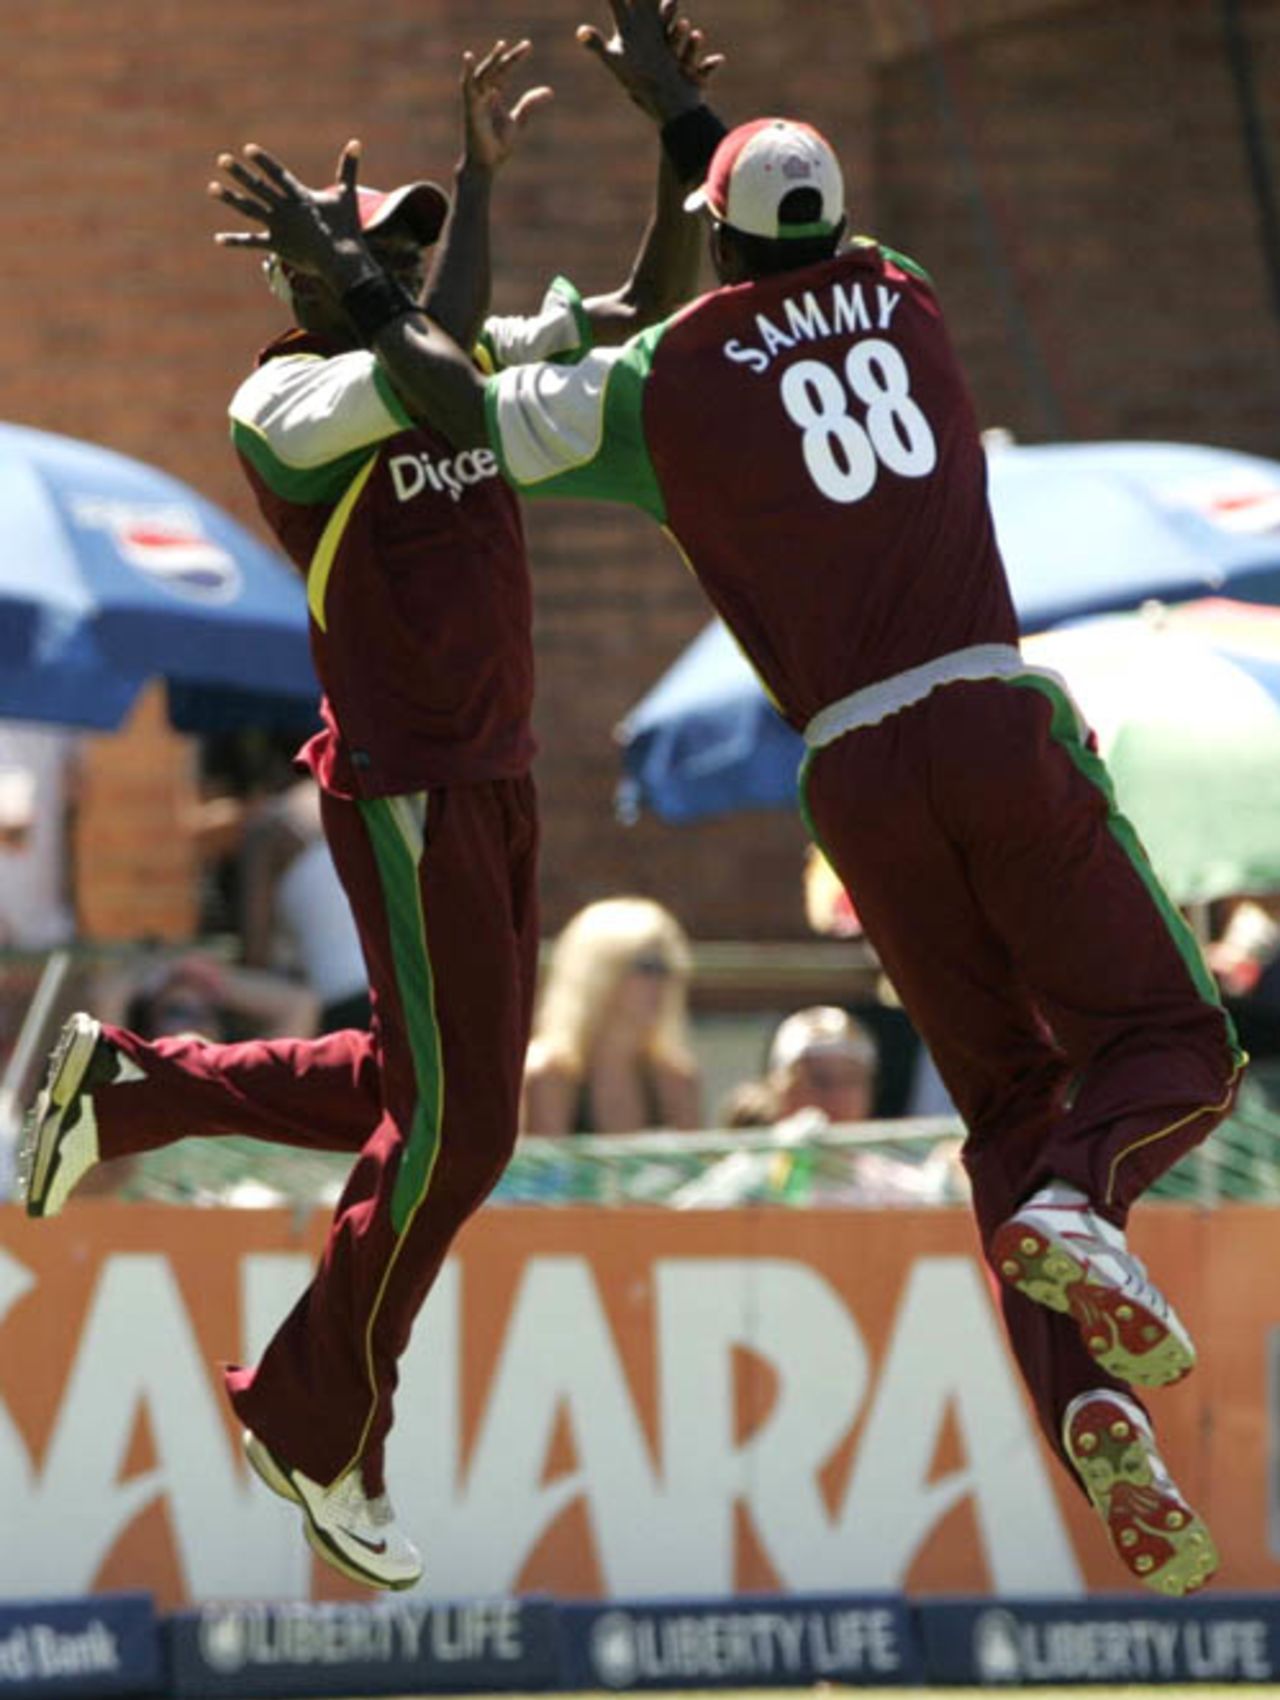 Jerome Taylor and Darren Sammy exchange high fives, South Africa v West Indies, 3rd ODI, Port Elizabeth, January 27, 2008